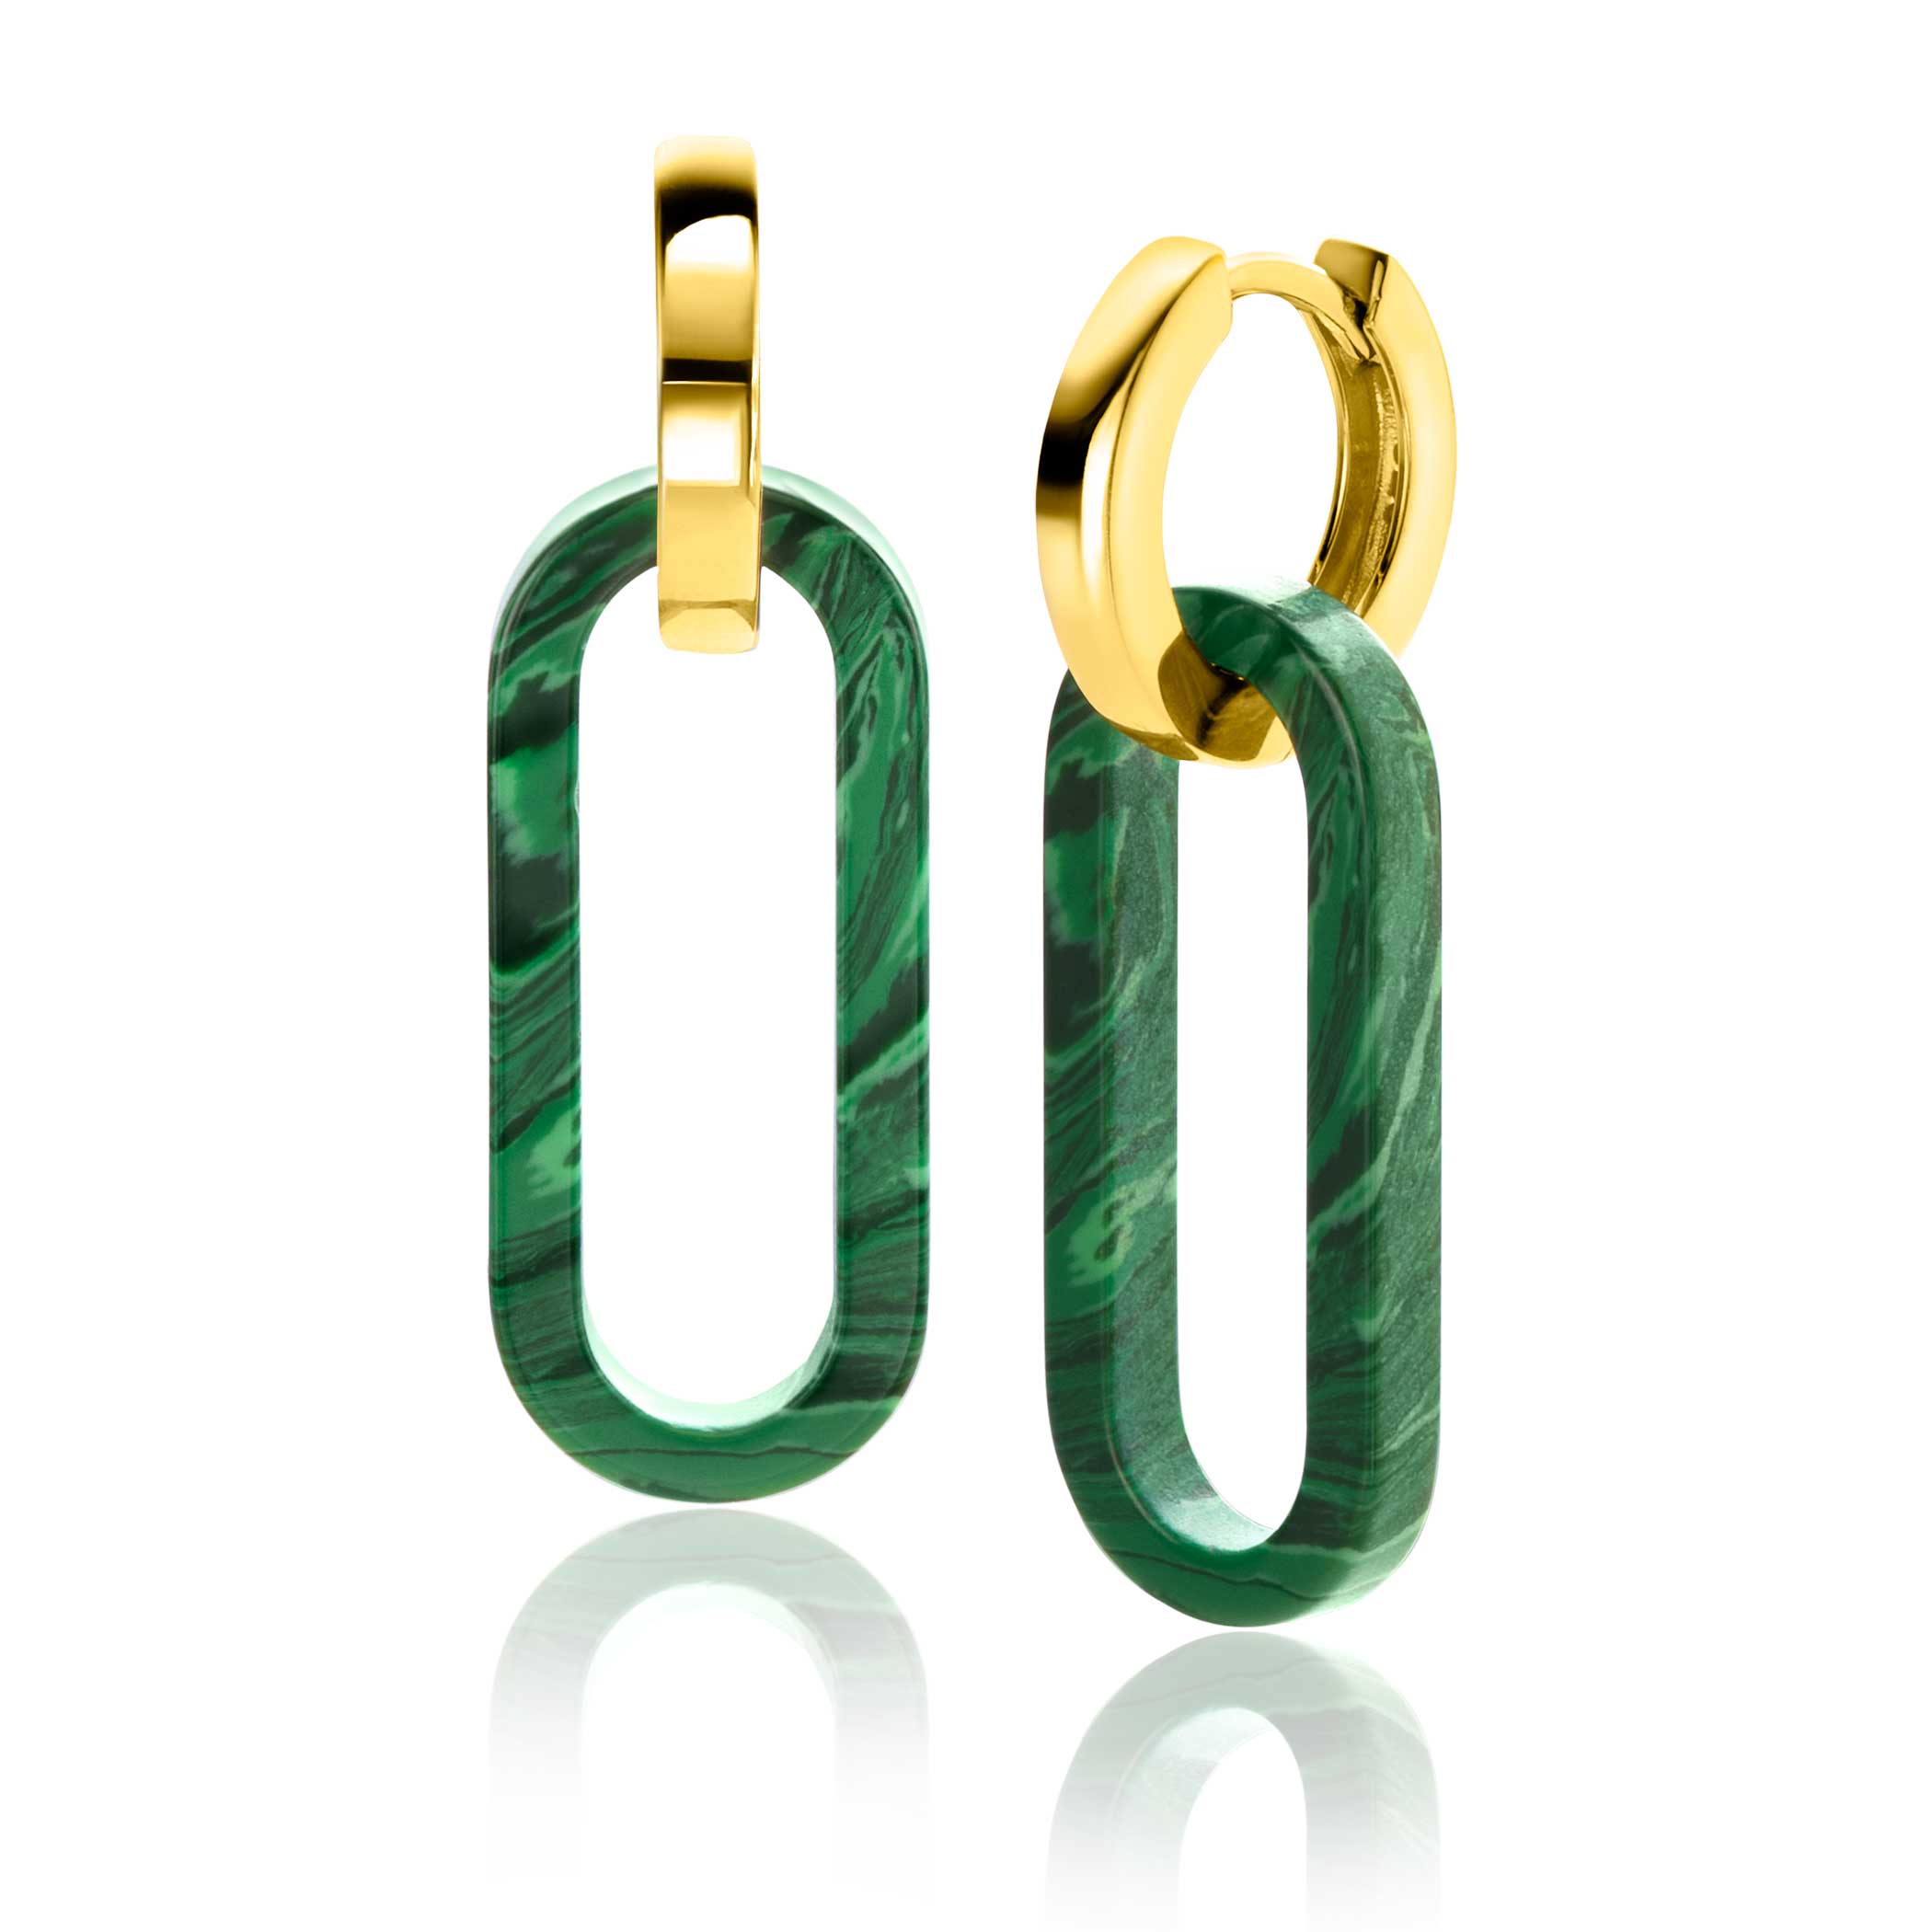 30mm ZINZI Large Oval Earrings Pendants in Trendy Malachite Green ZICH2456G (excl. hoop earrings)